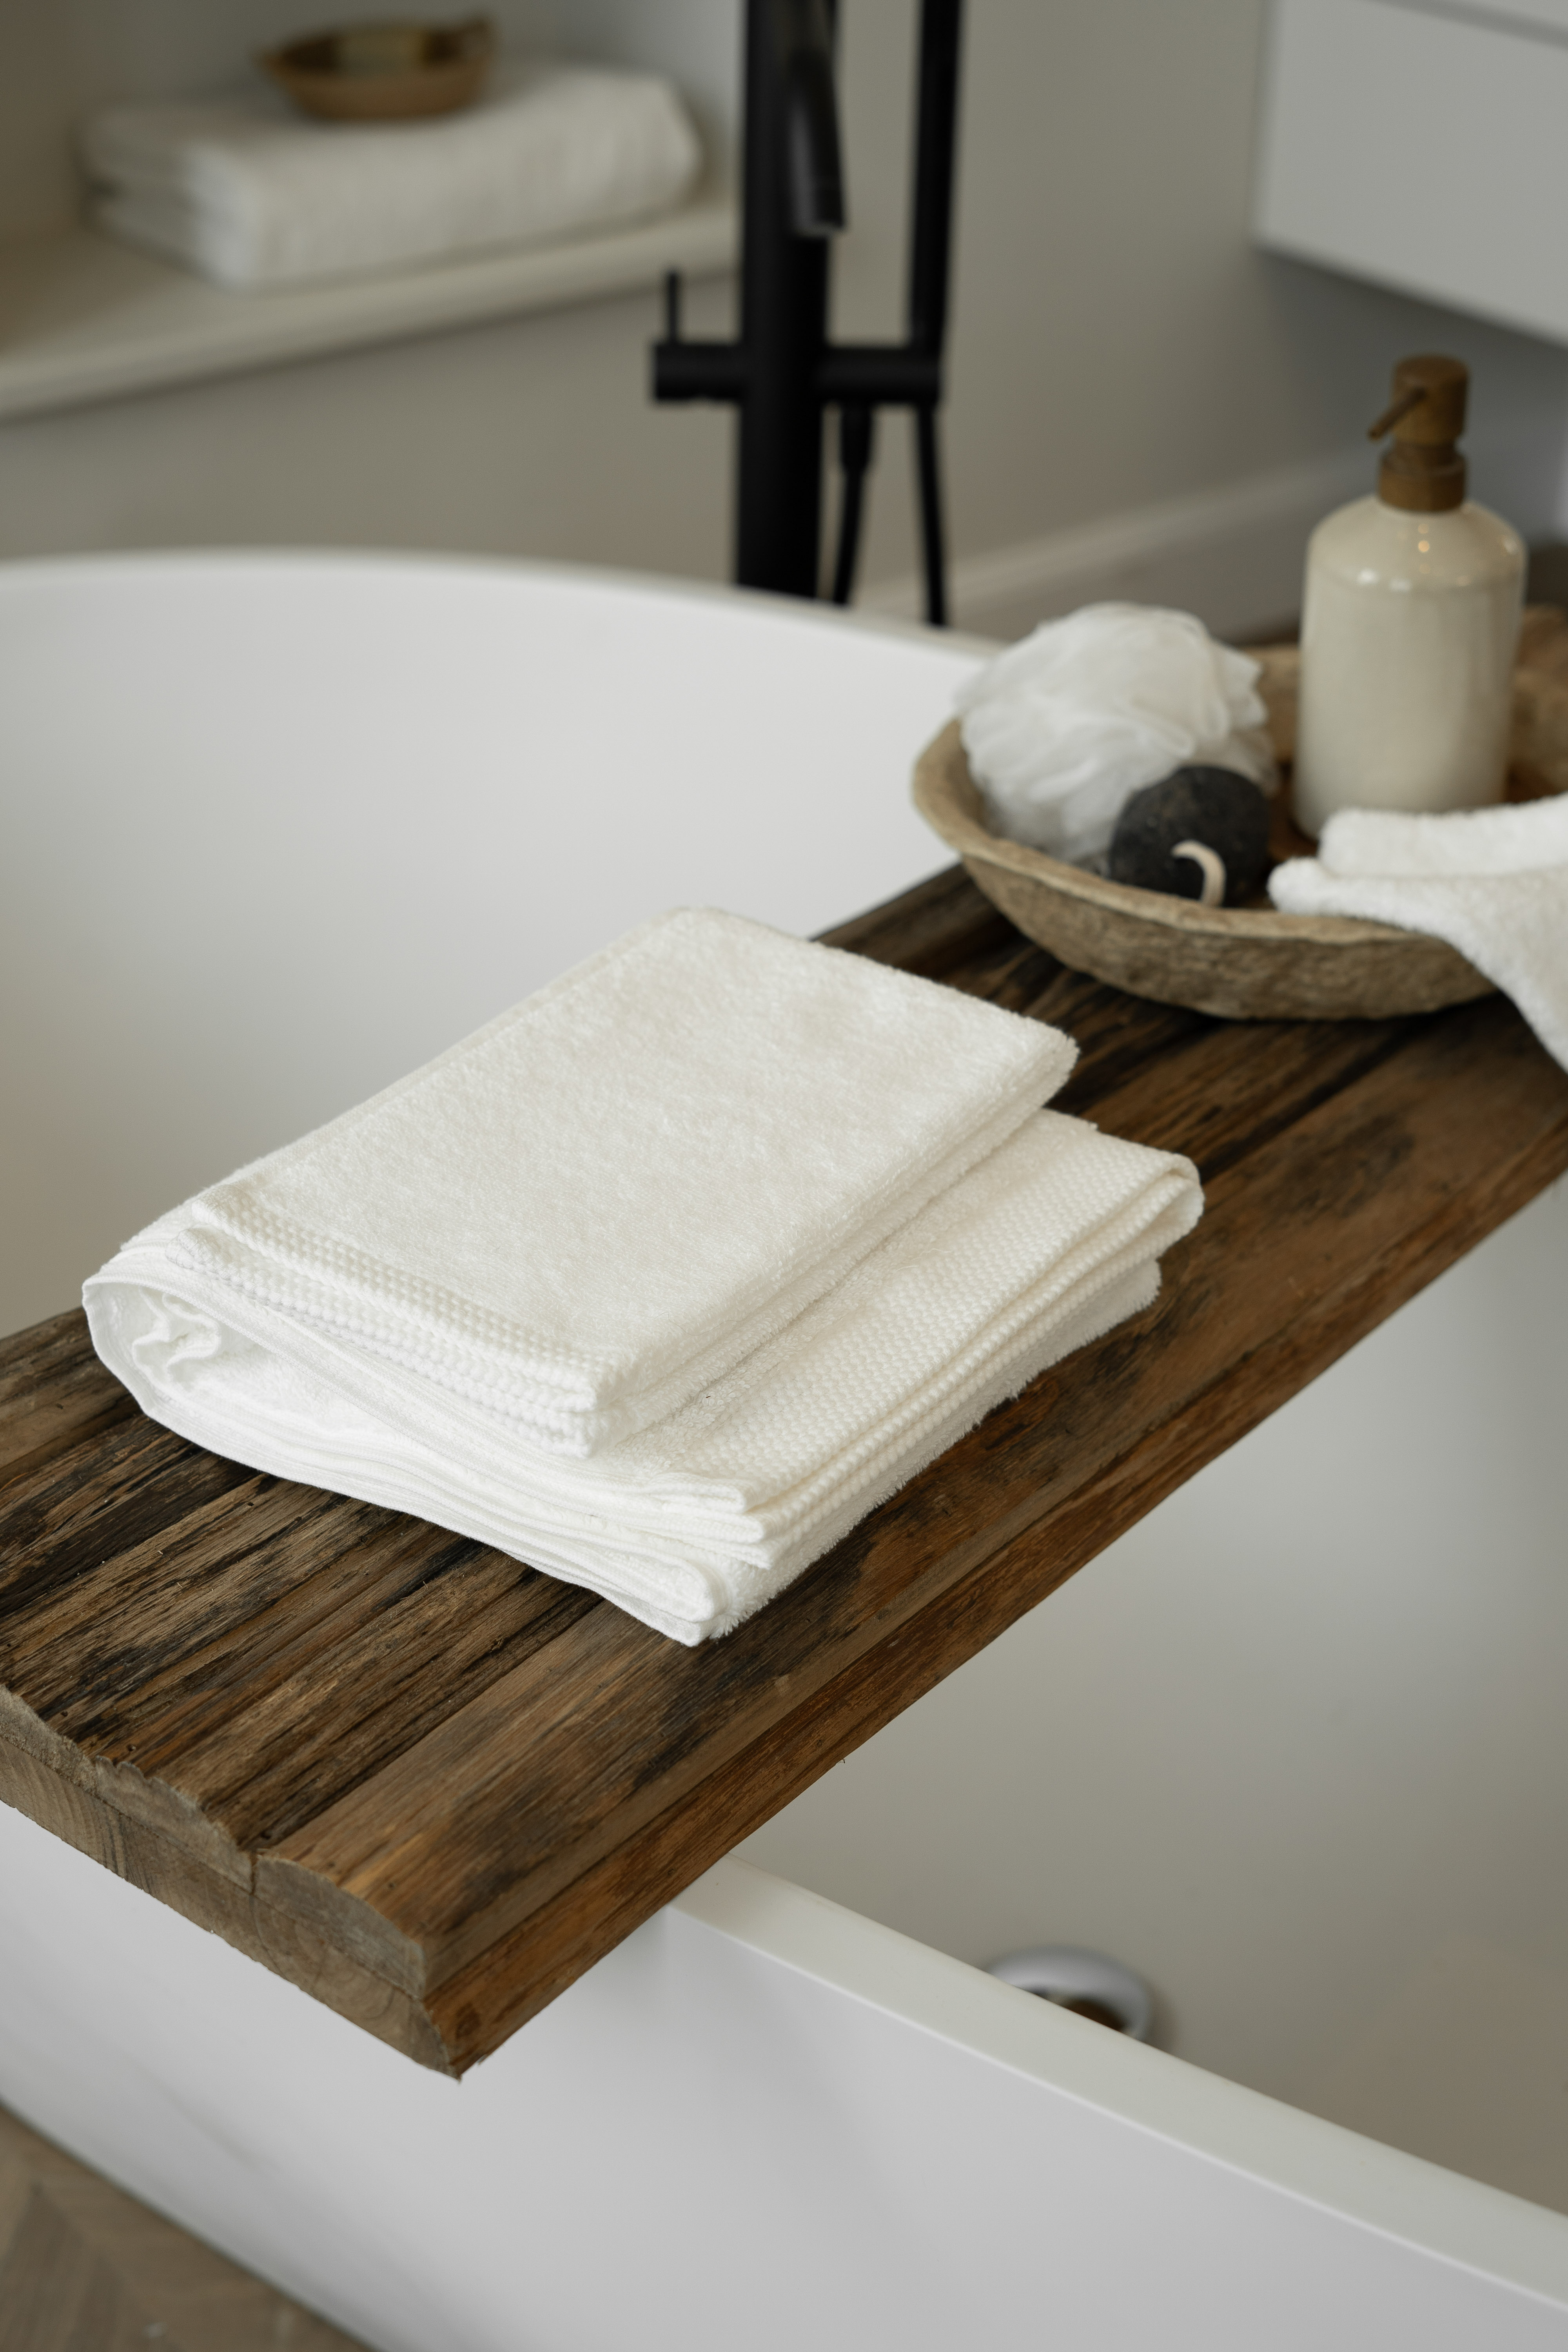 Bath towel DELUX 50x100cm, grey